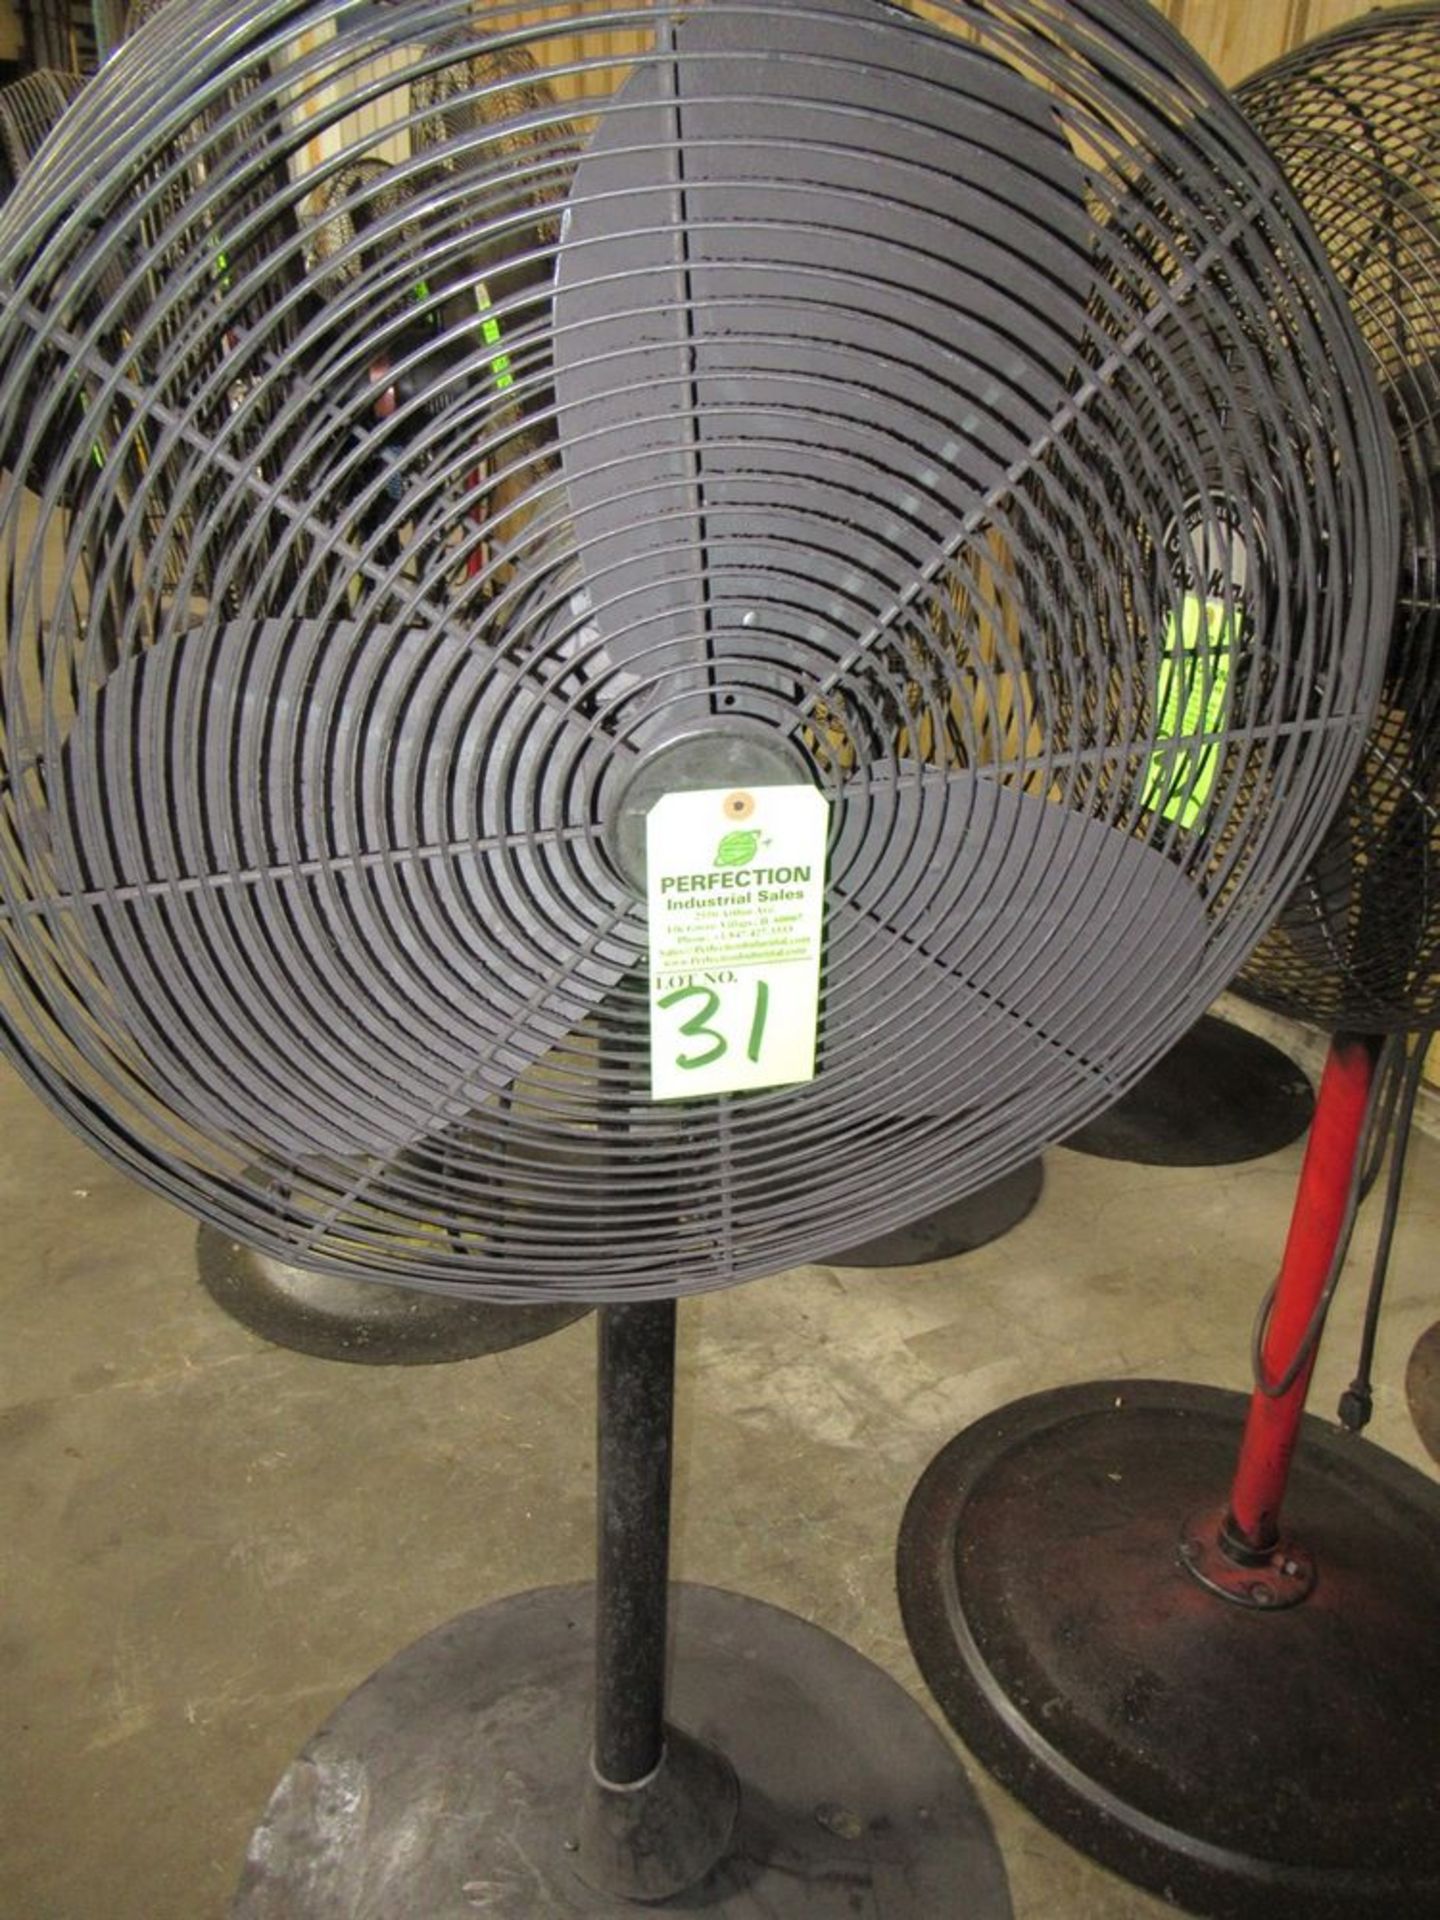 24" Pedestal Fan